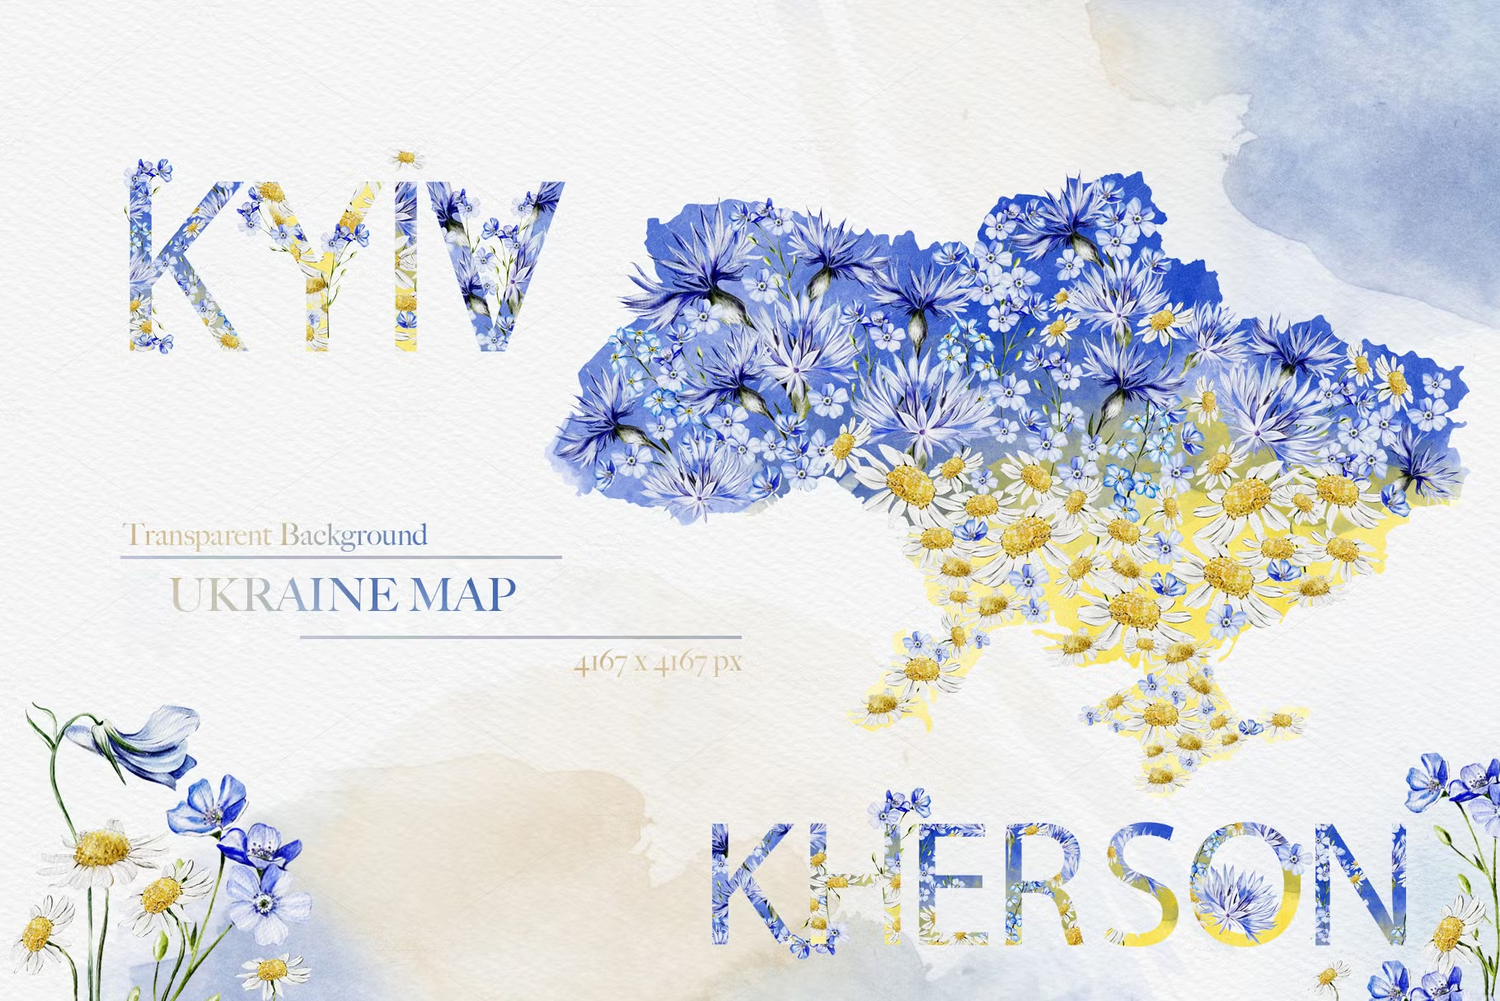 5593 乌克兰野花主题的水彩插画素材